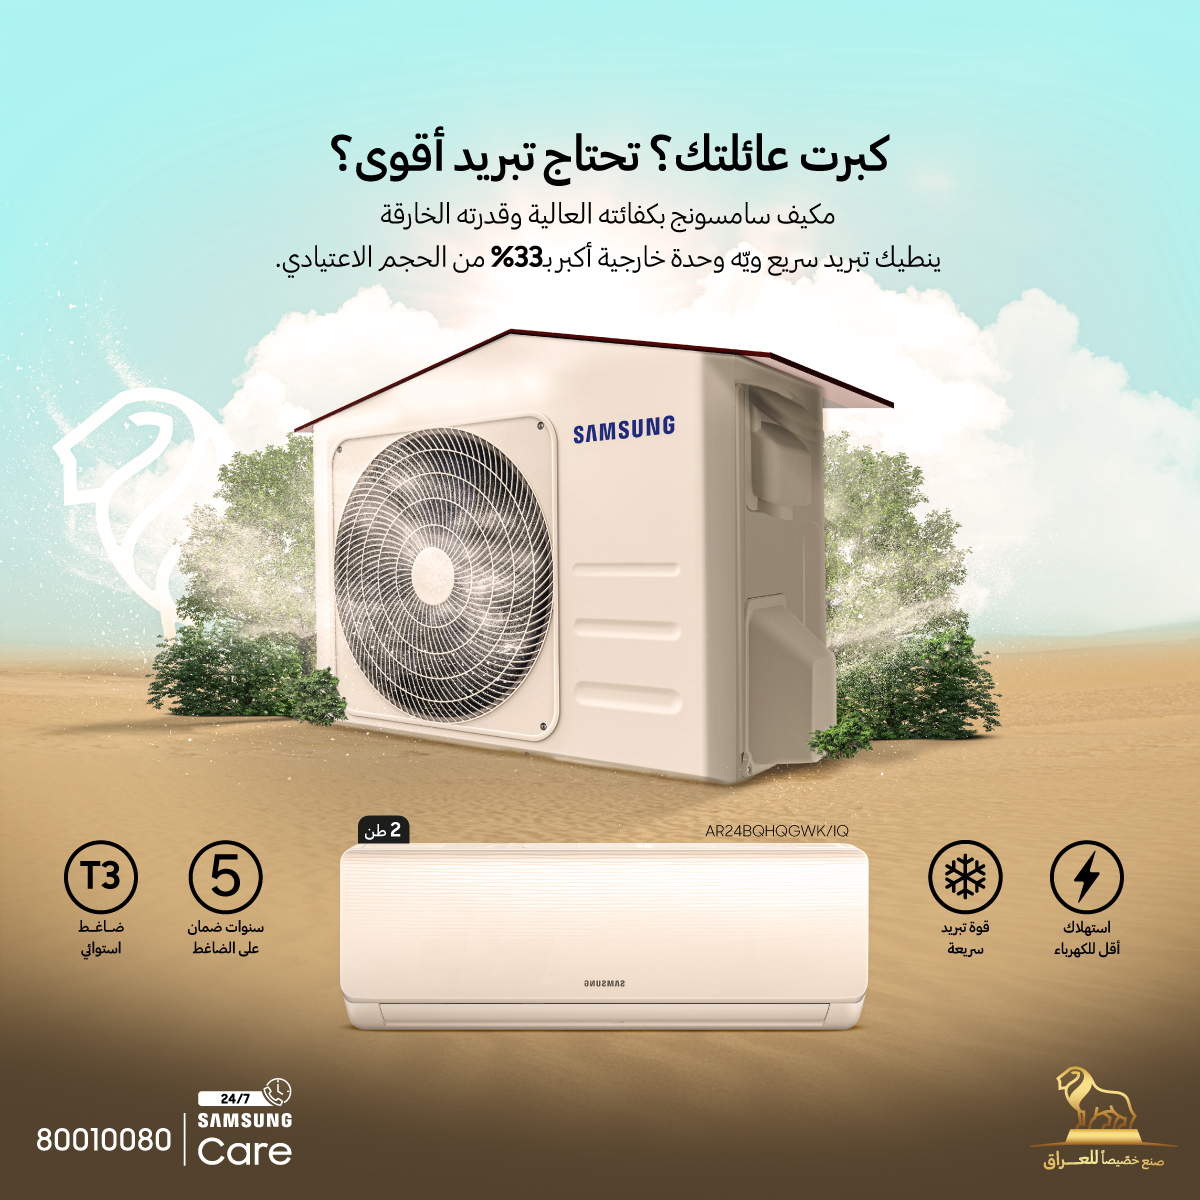 سامسونج إلكترونيكس تطلق تشكيلة أجهزة التكييف المنزلية “الأُسود” في السوق العراقي استعداداً لصيف 2023